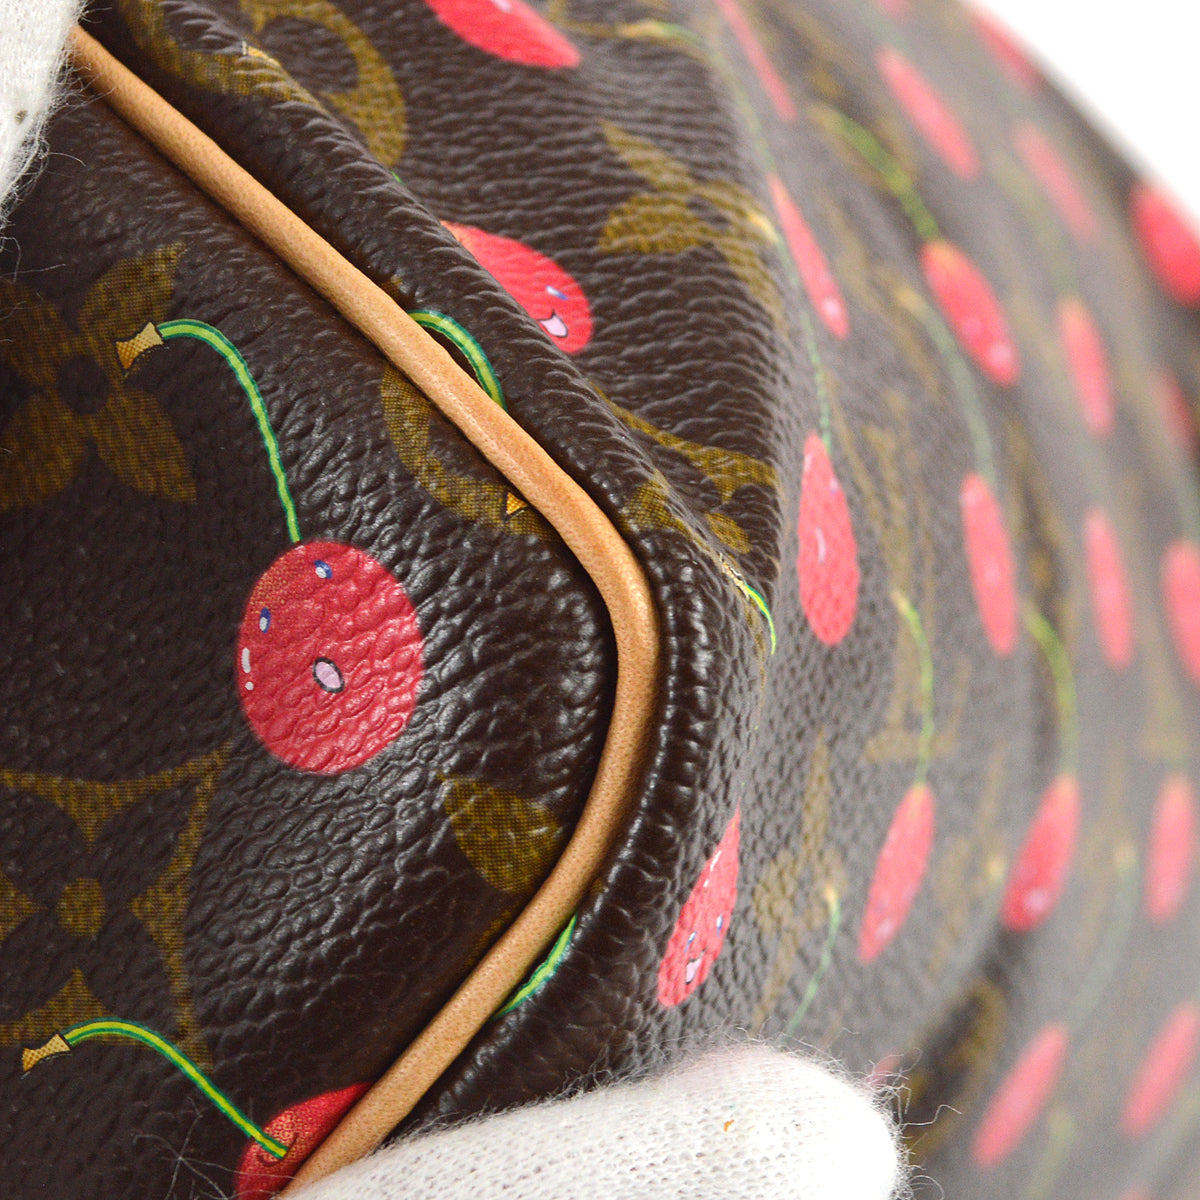 Louis Vuitton Speedy 25 Handbag Monogram Cherry Murakami M95009